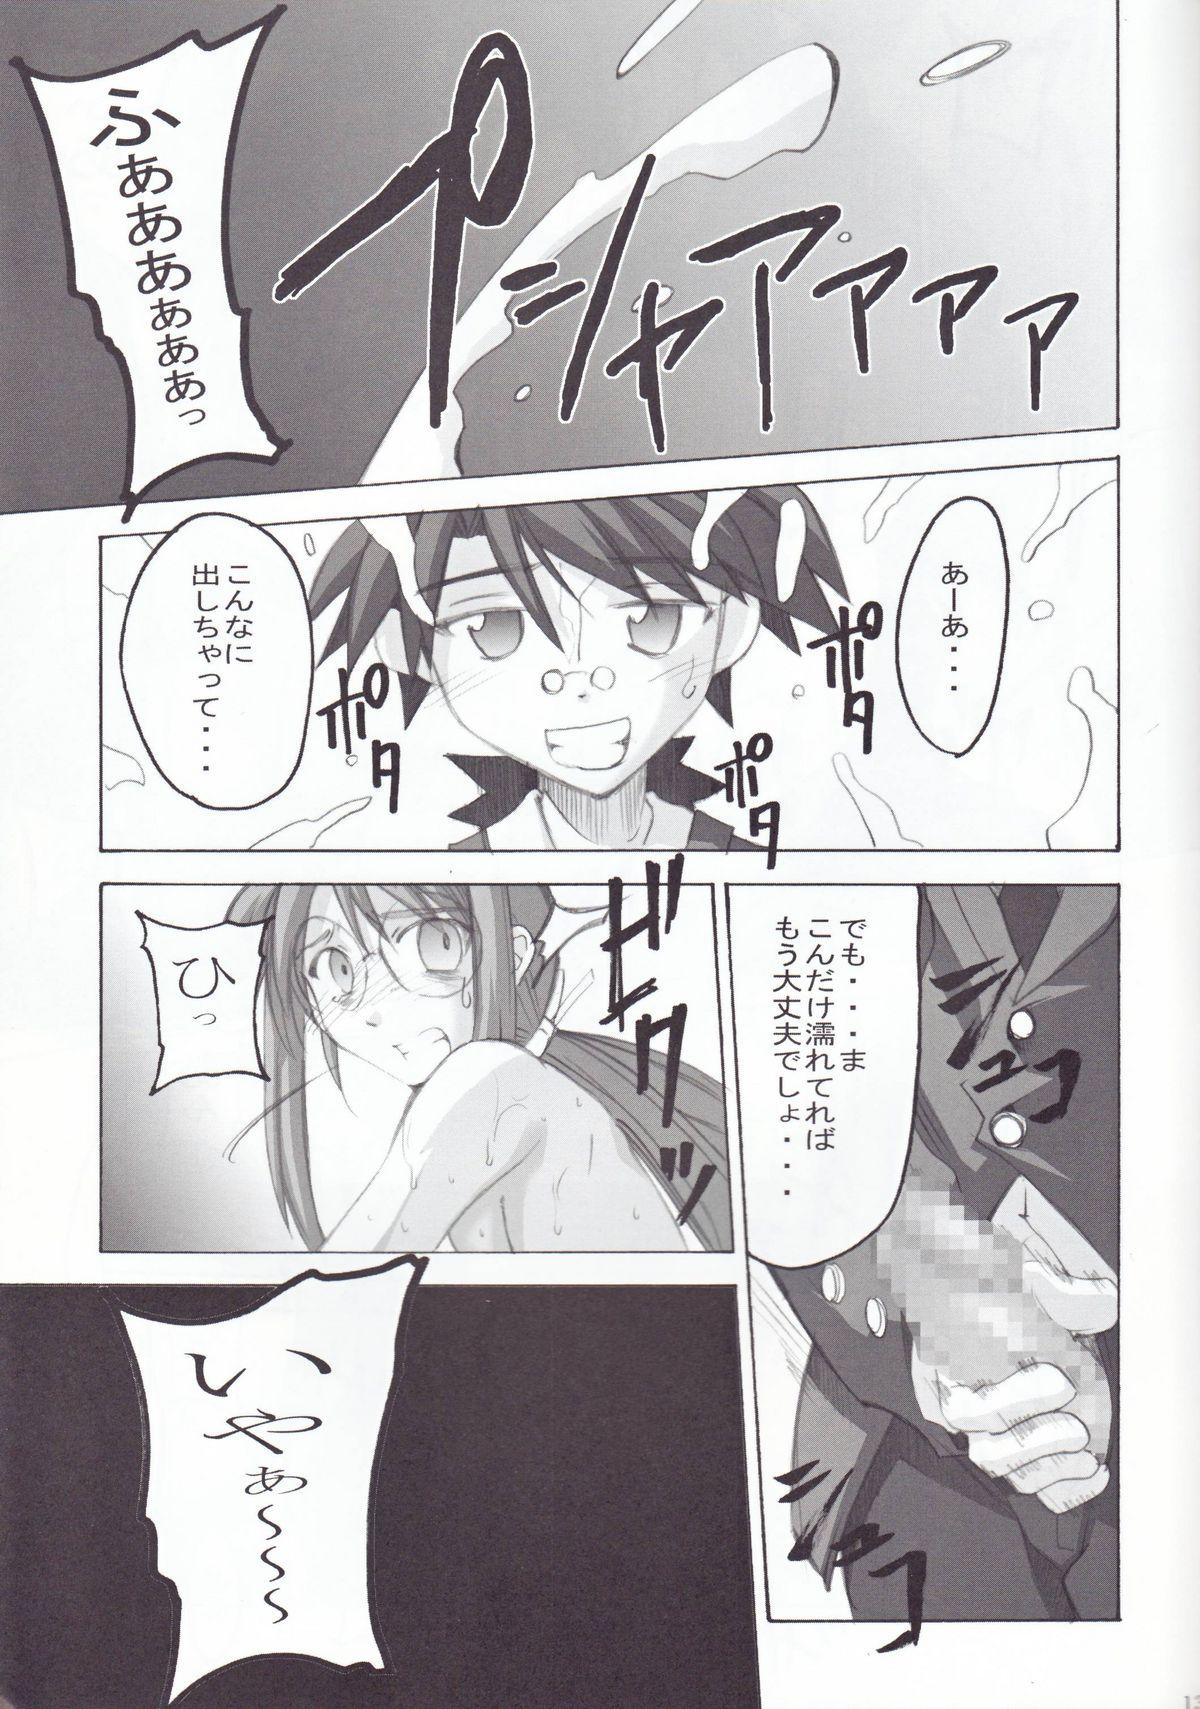 Pussysex Negimagi! vol. 1 - Mahou sensei negima Glamour Porn - Page 12